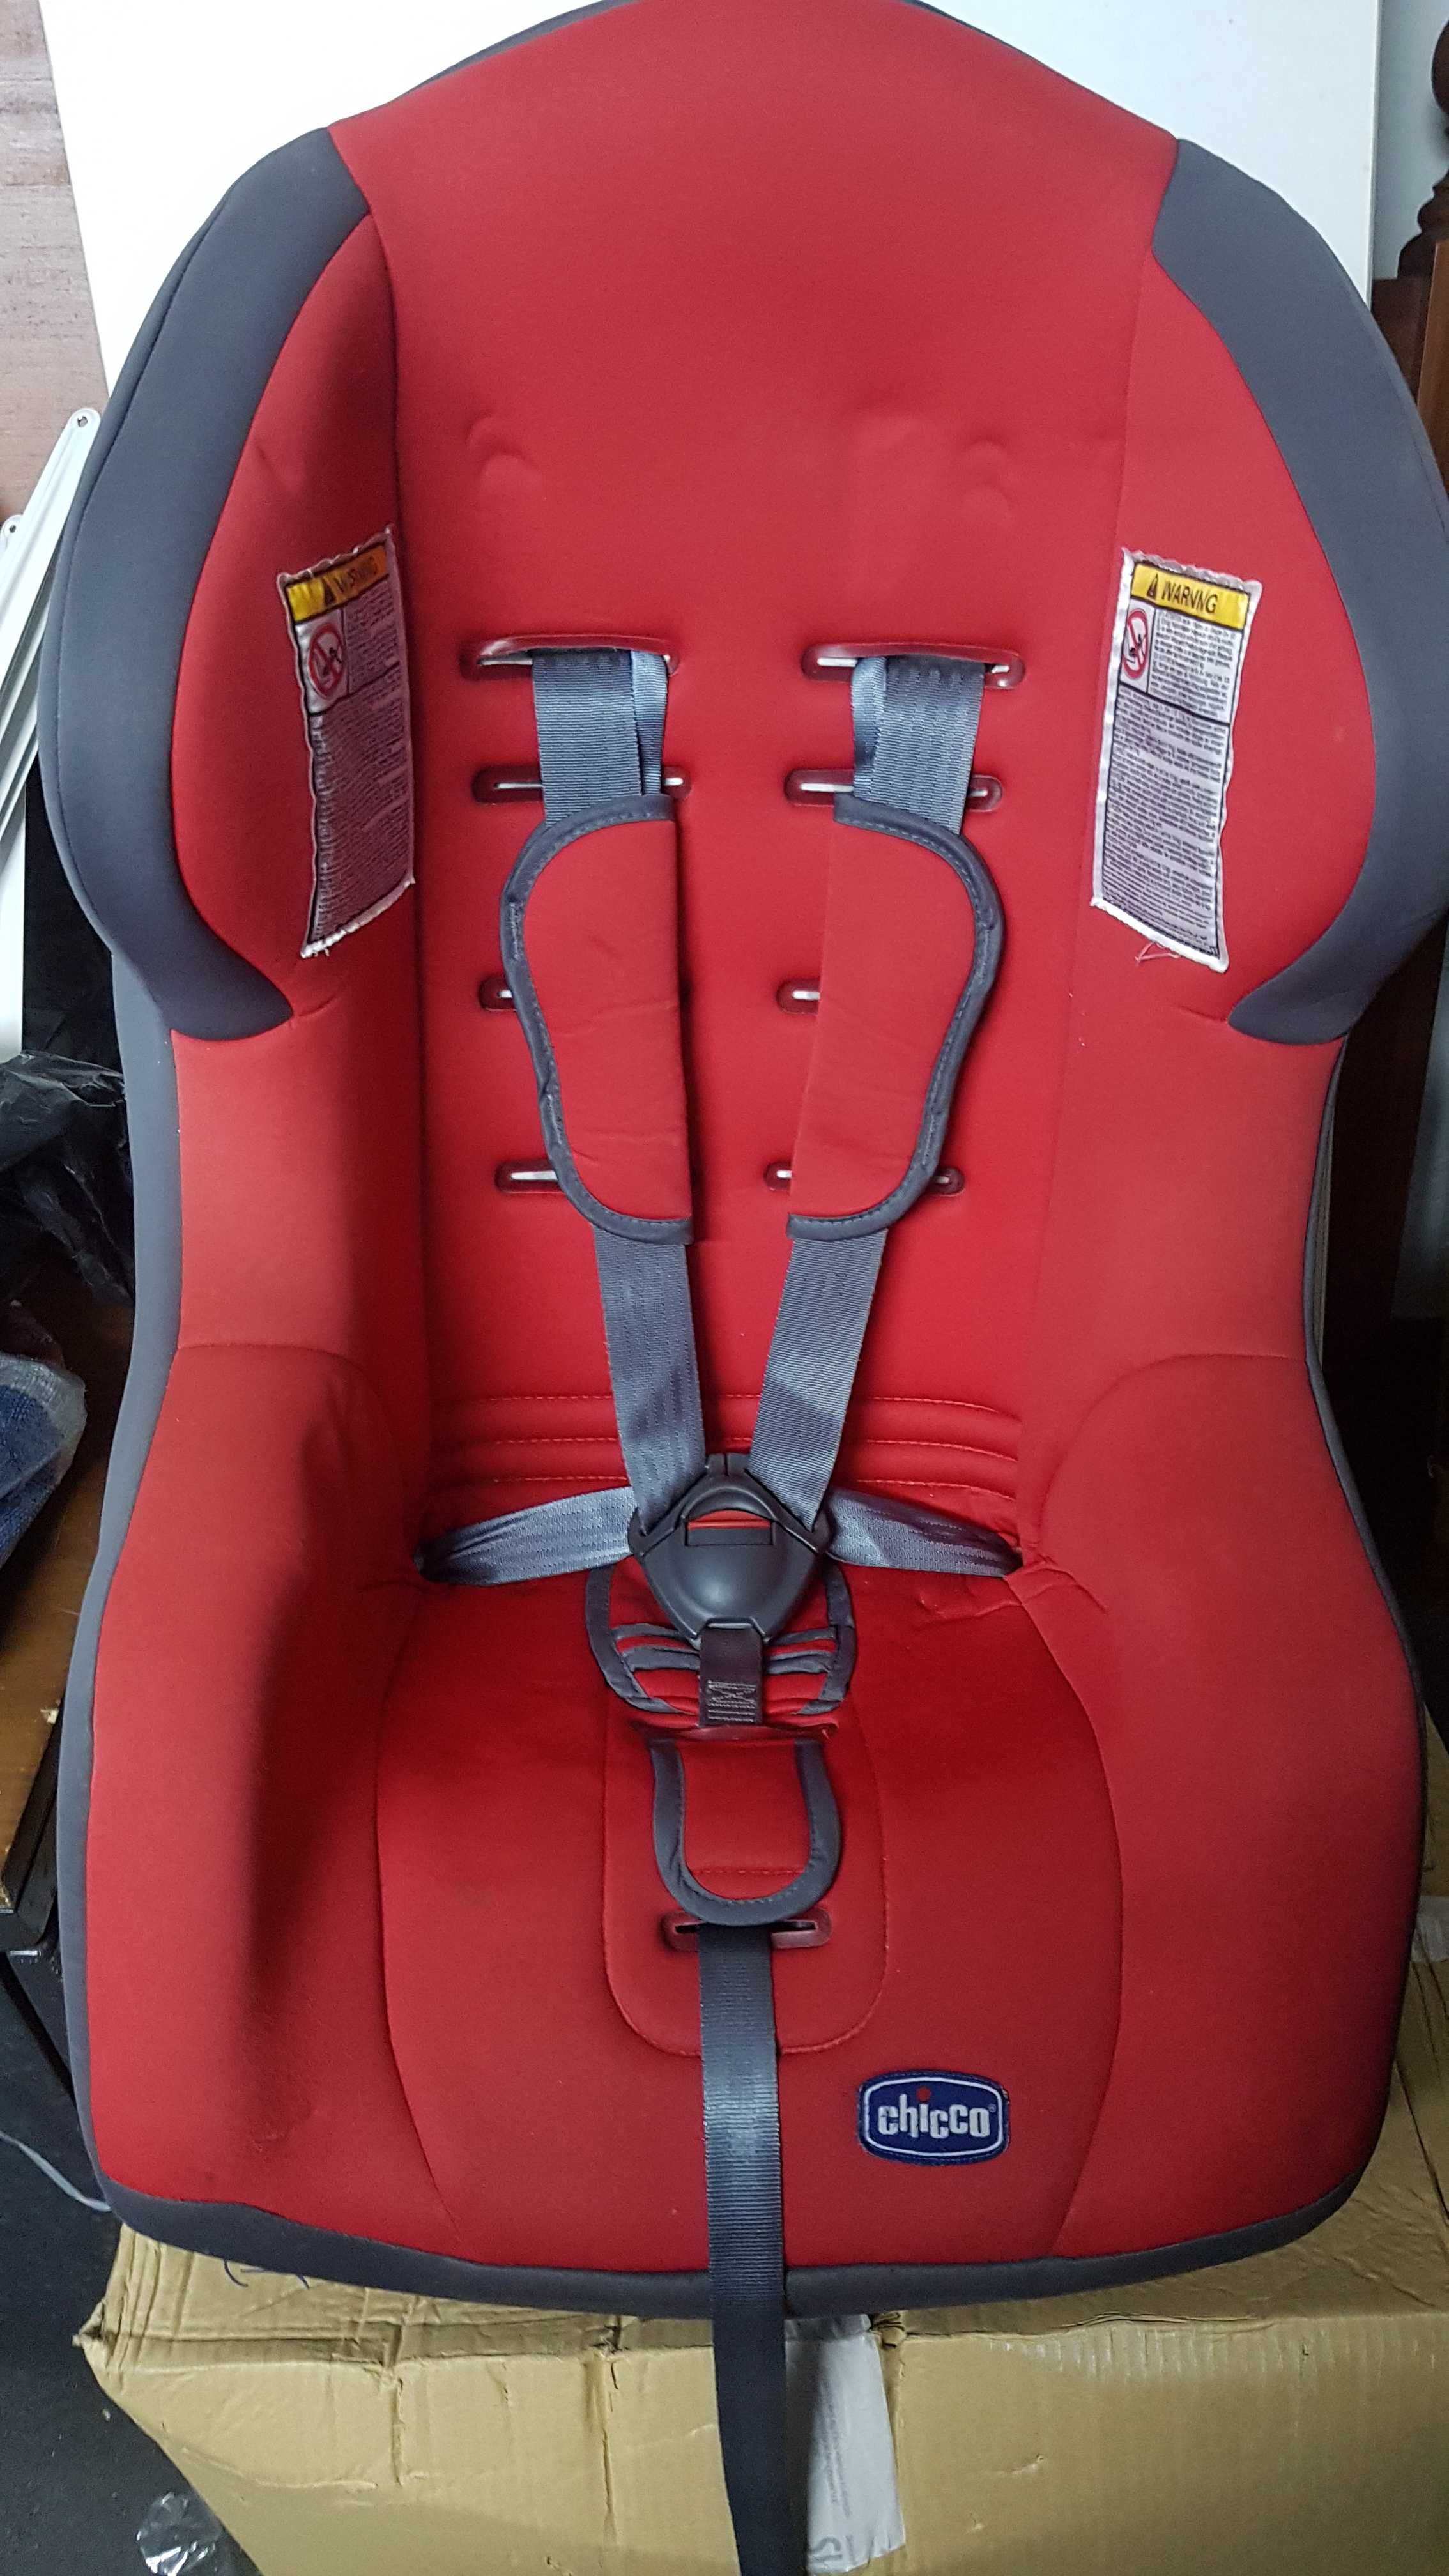 Cadeira de bebé auto